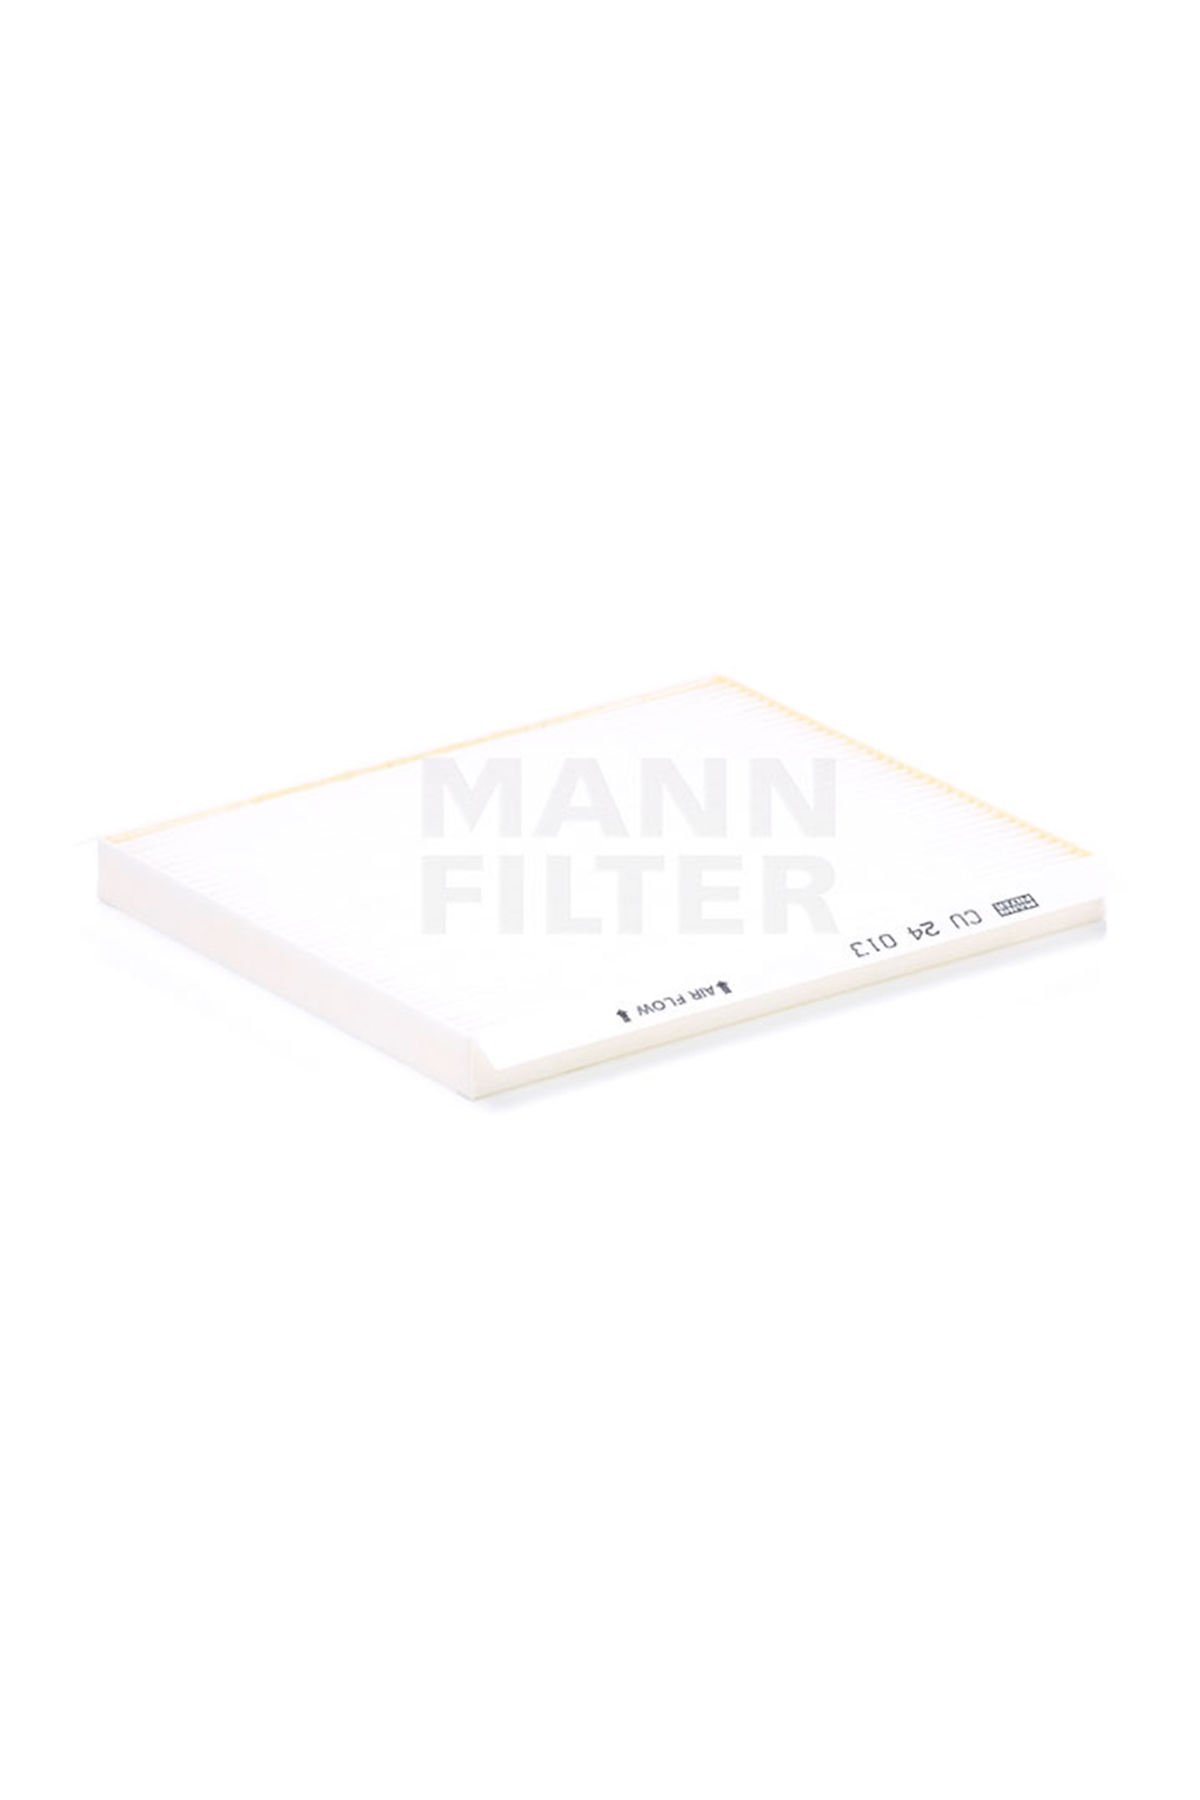 Hyundai İ20 Polen Filtresi 2015-2019 Mann Filter